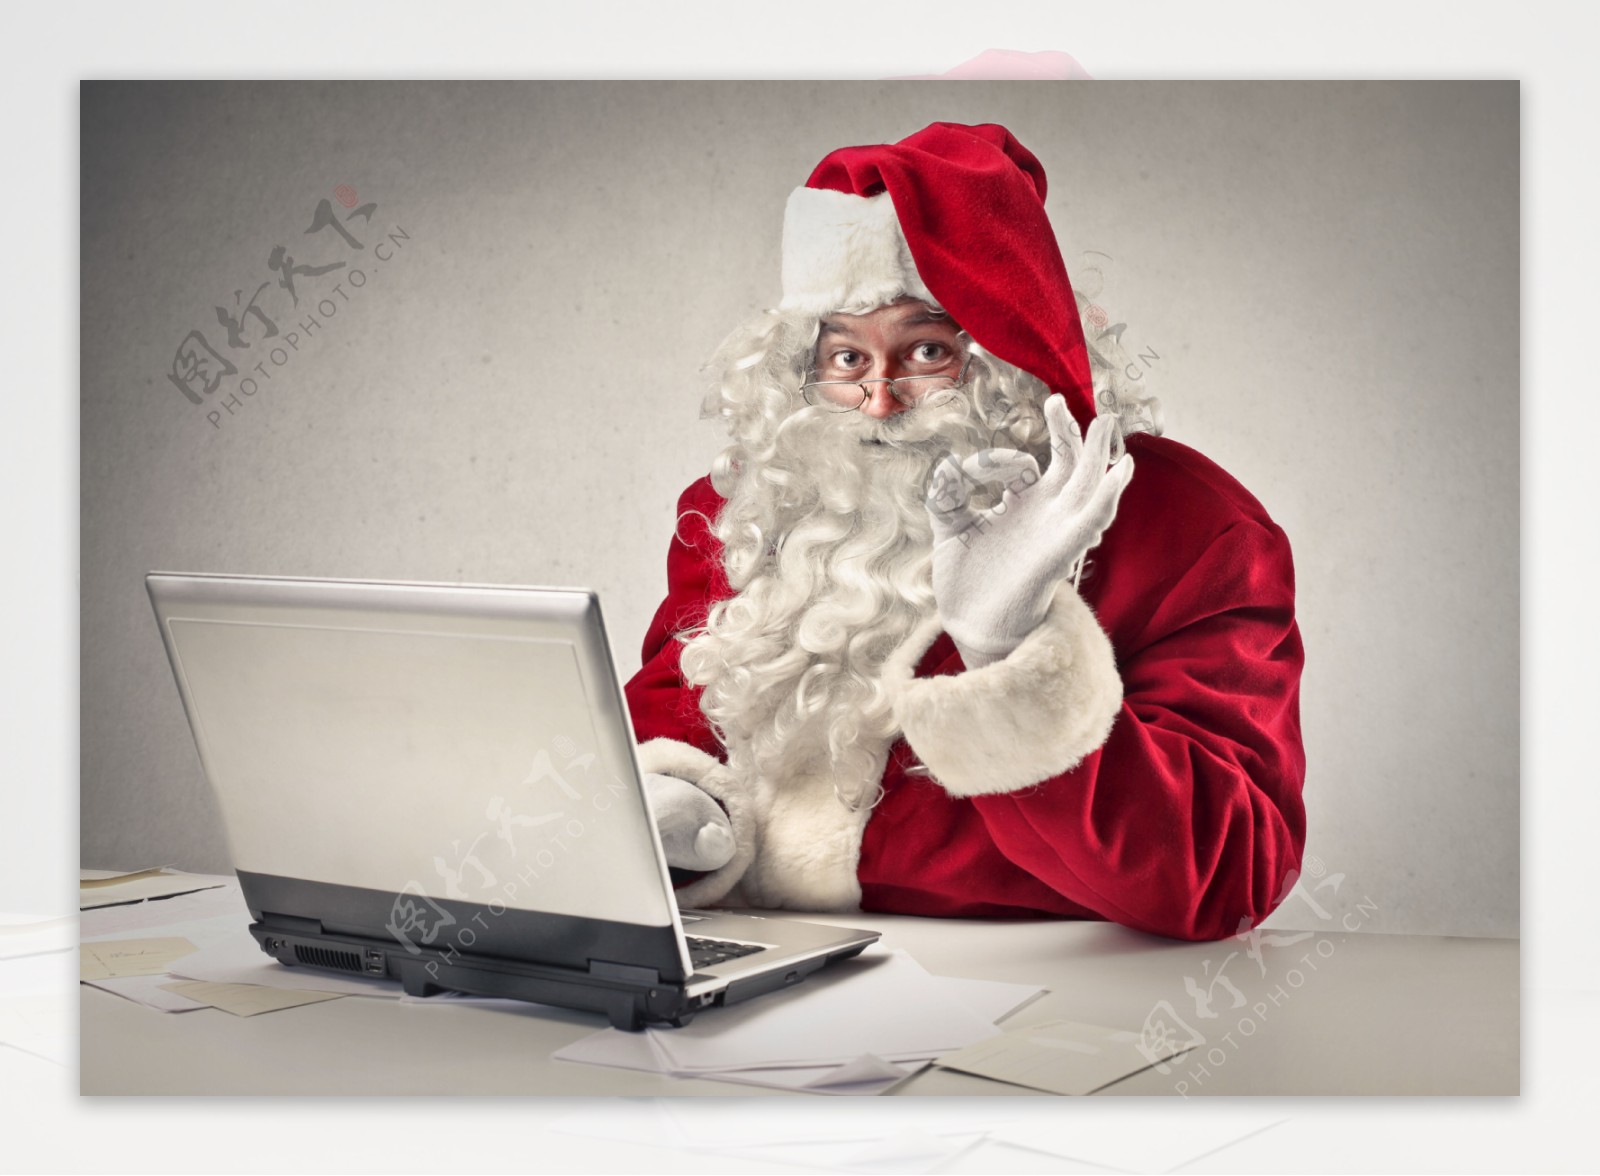 笔记本电脑前的圣诞老人图片